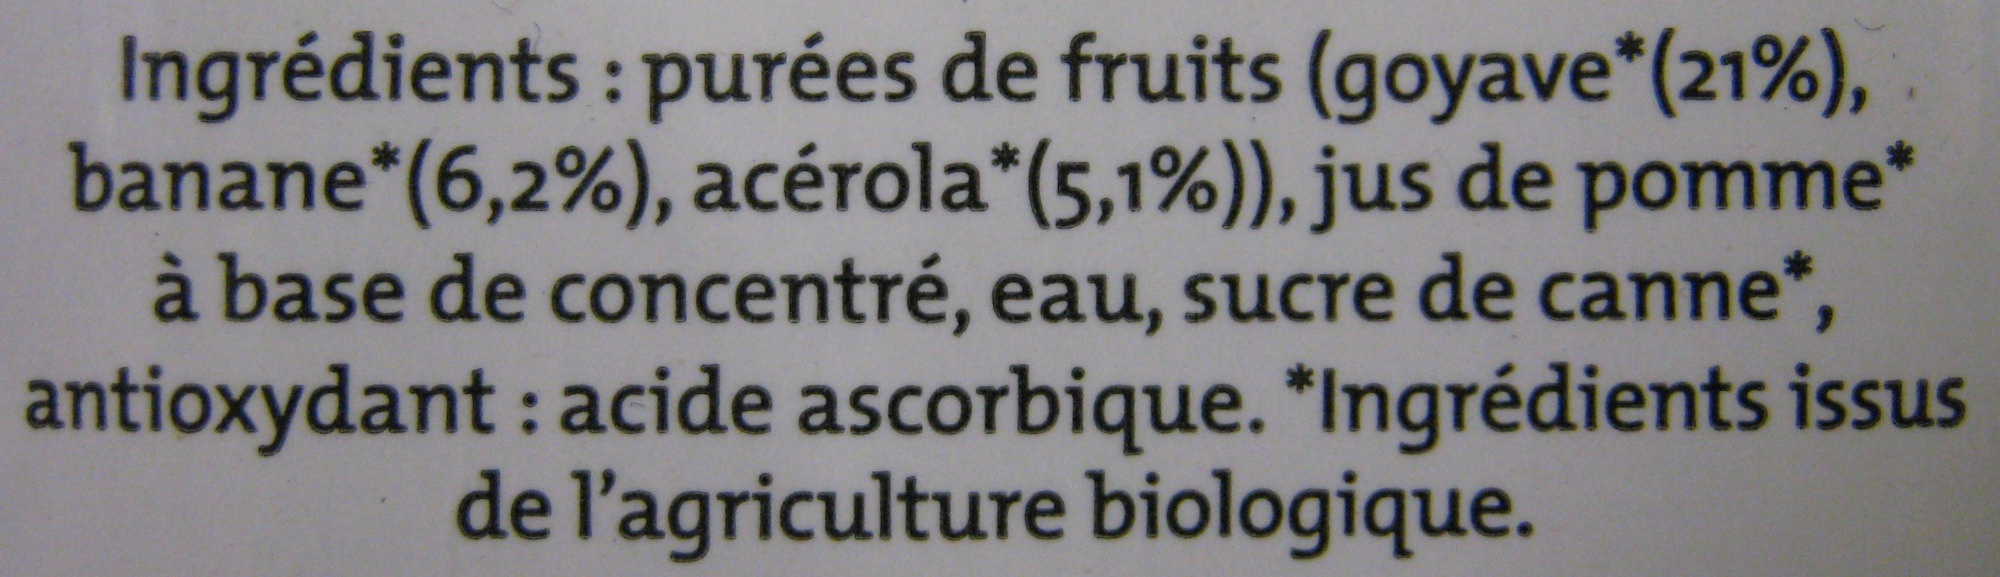 Nectar banane goyave acérola bio - Ingredients - fr